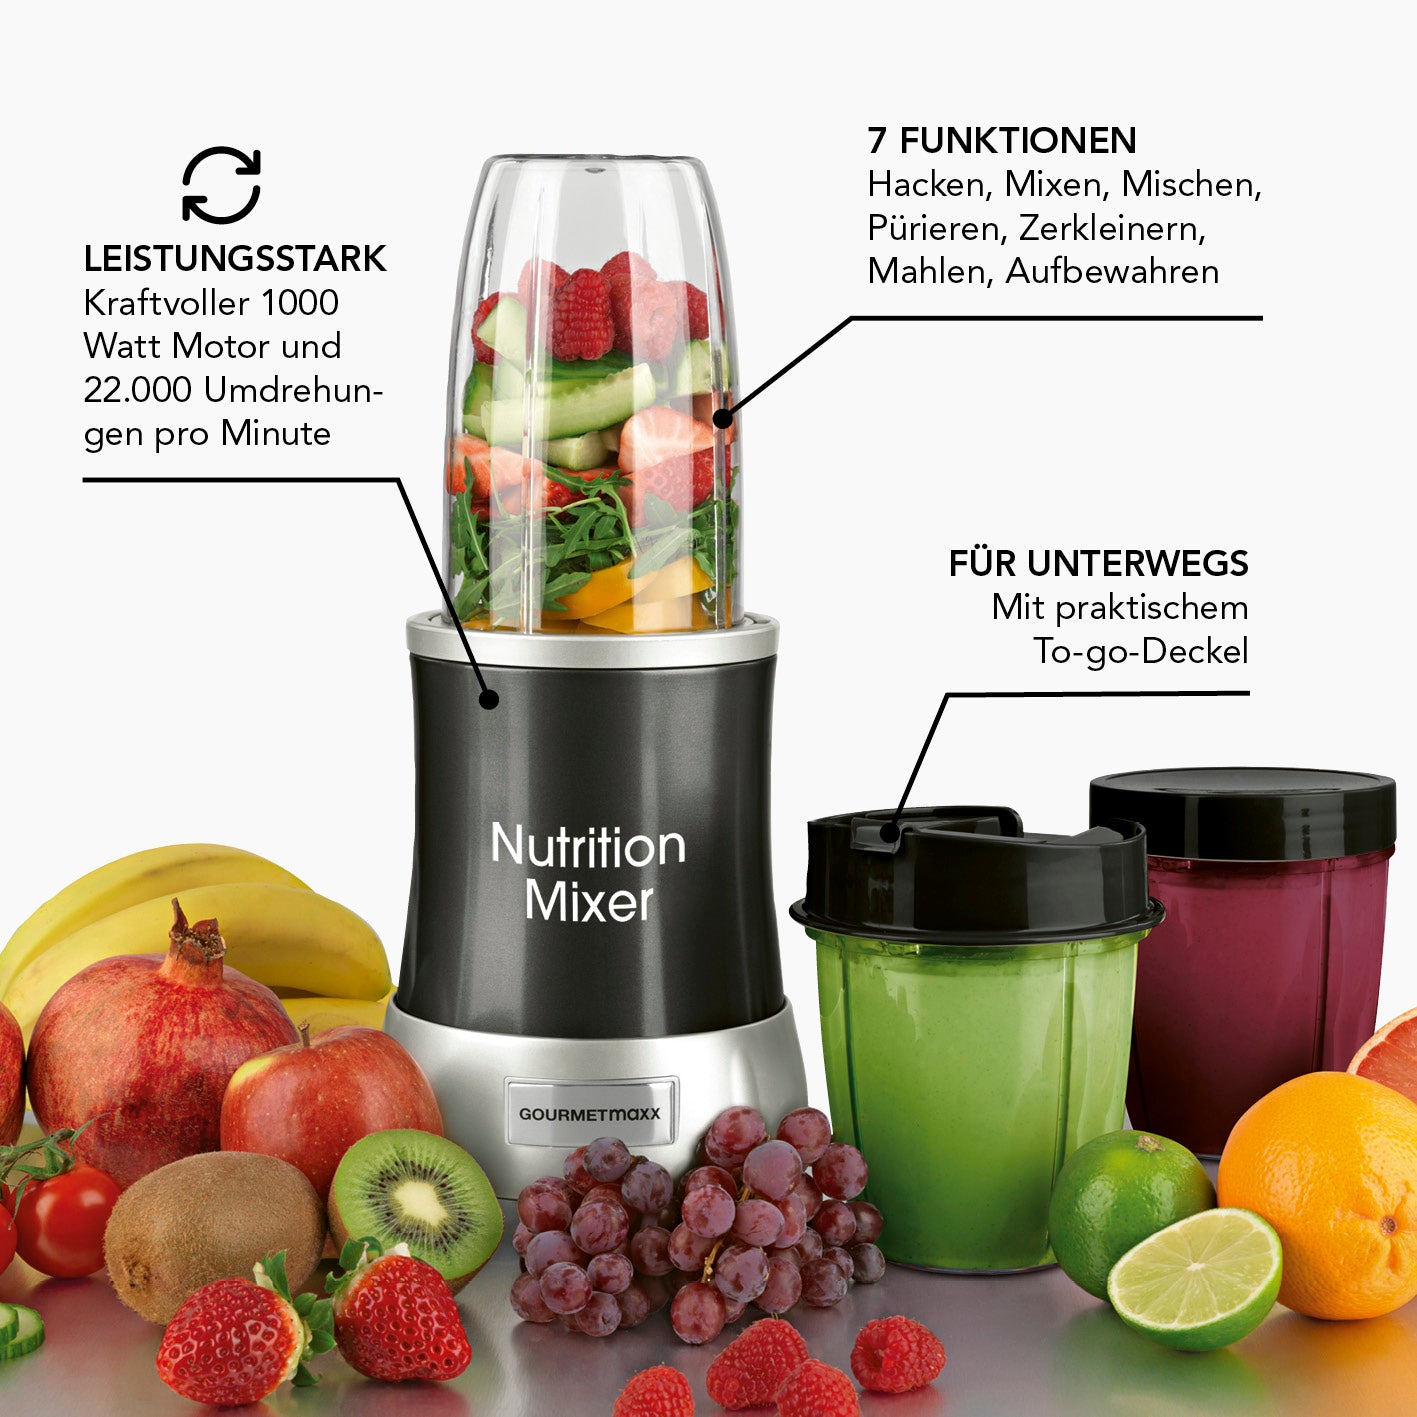 Nutrition Mixer Deluxe 11-tlg. - Edelstahl/schwarz